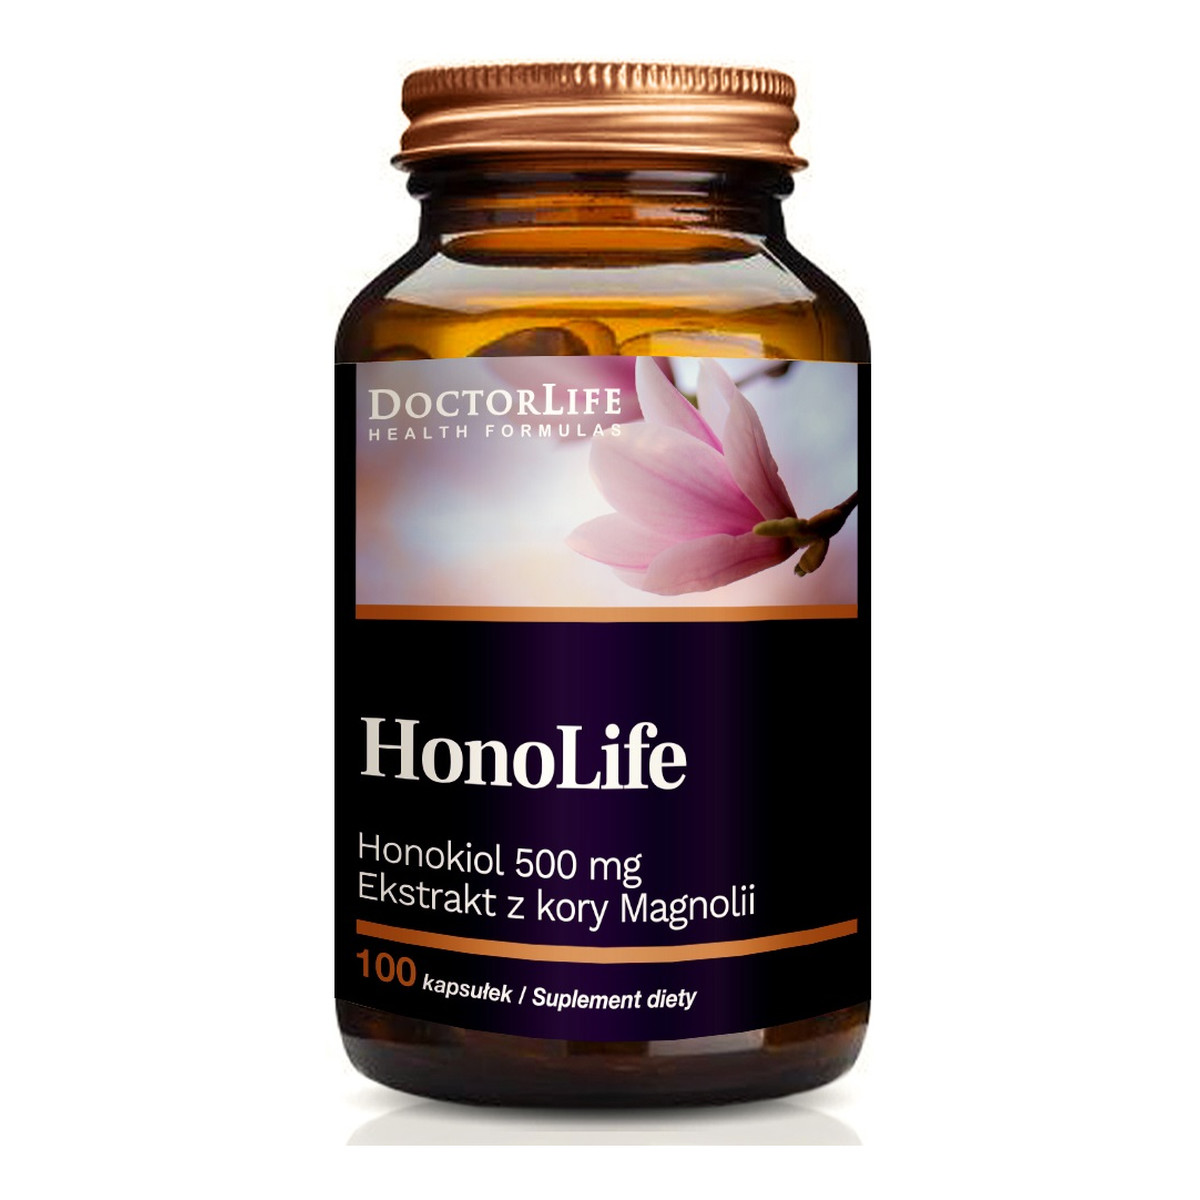 Doctor Life Honolife ekstrakt z kory magnolii suplement diety 100 kapsułek